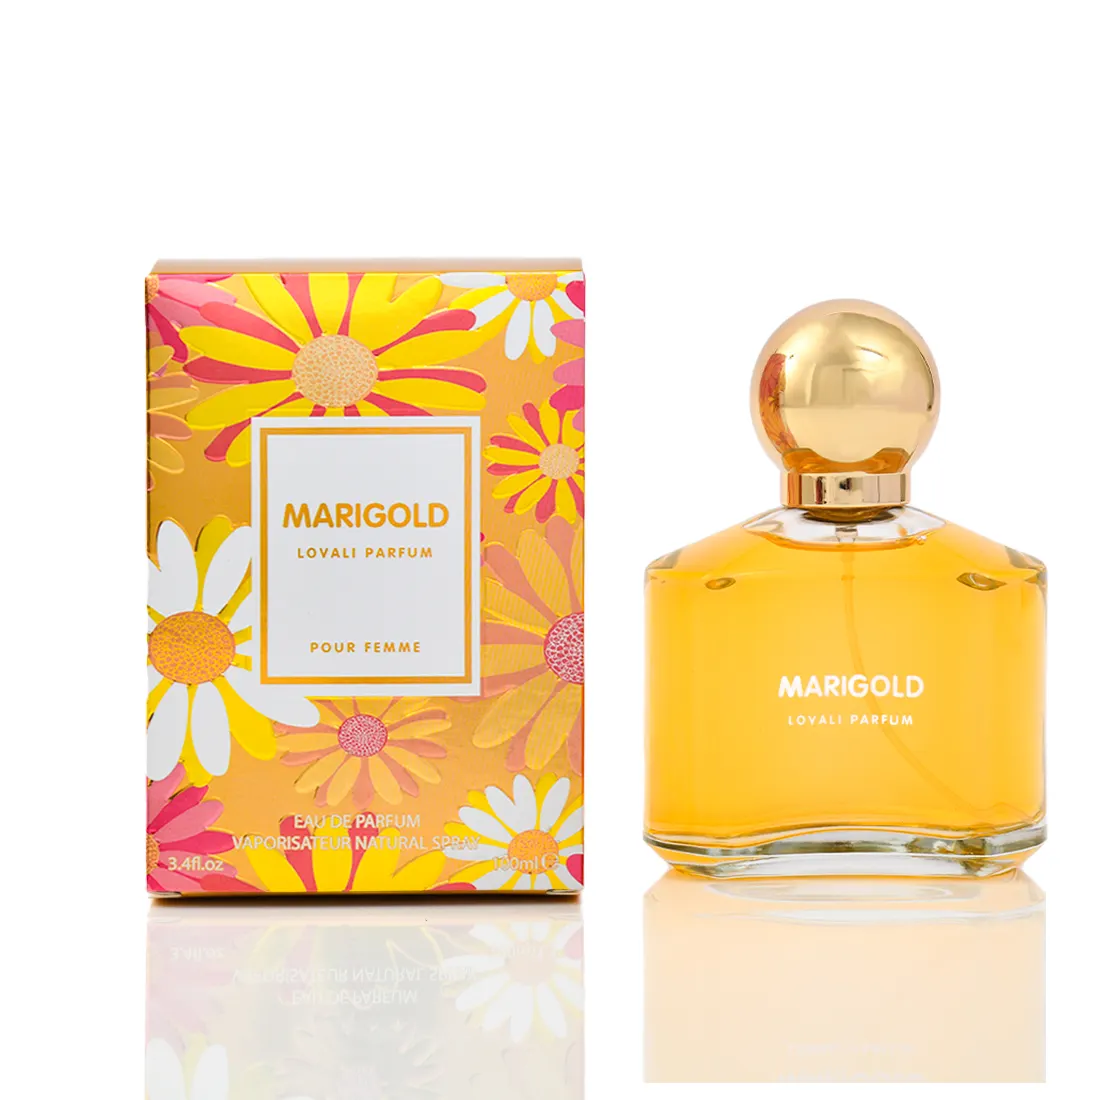 Perfume de larga duración, 100ml, mejor Perfume de mujer Lovali, marca de nombre, MARIGOLD